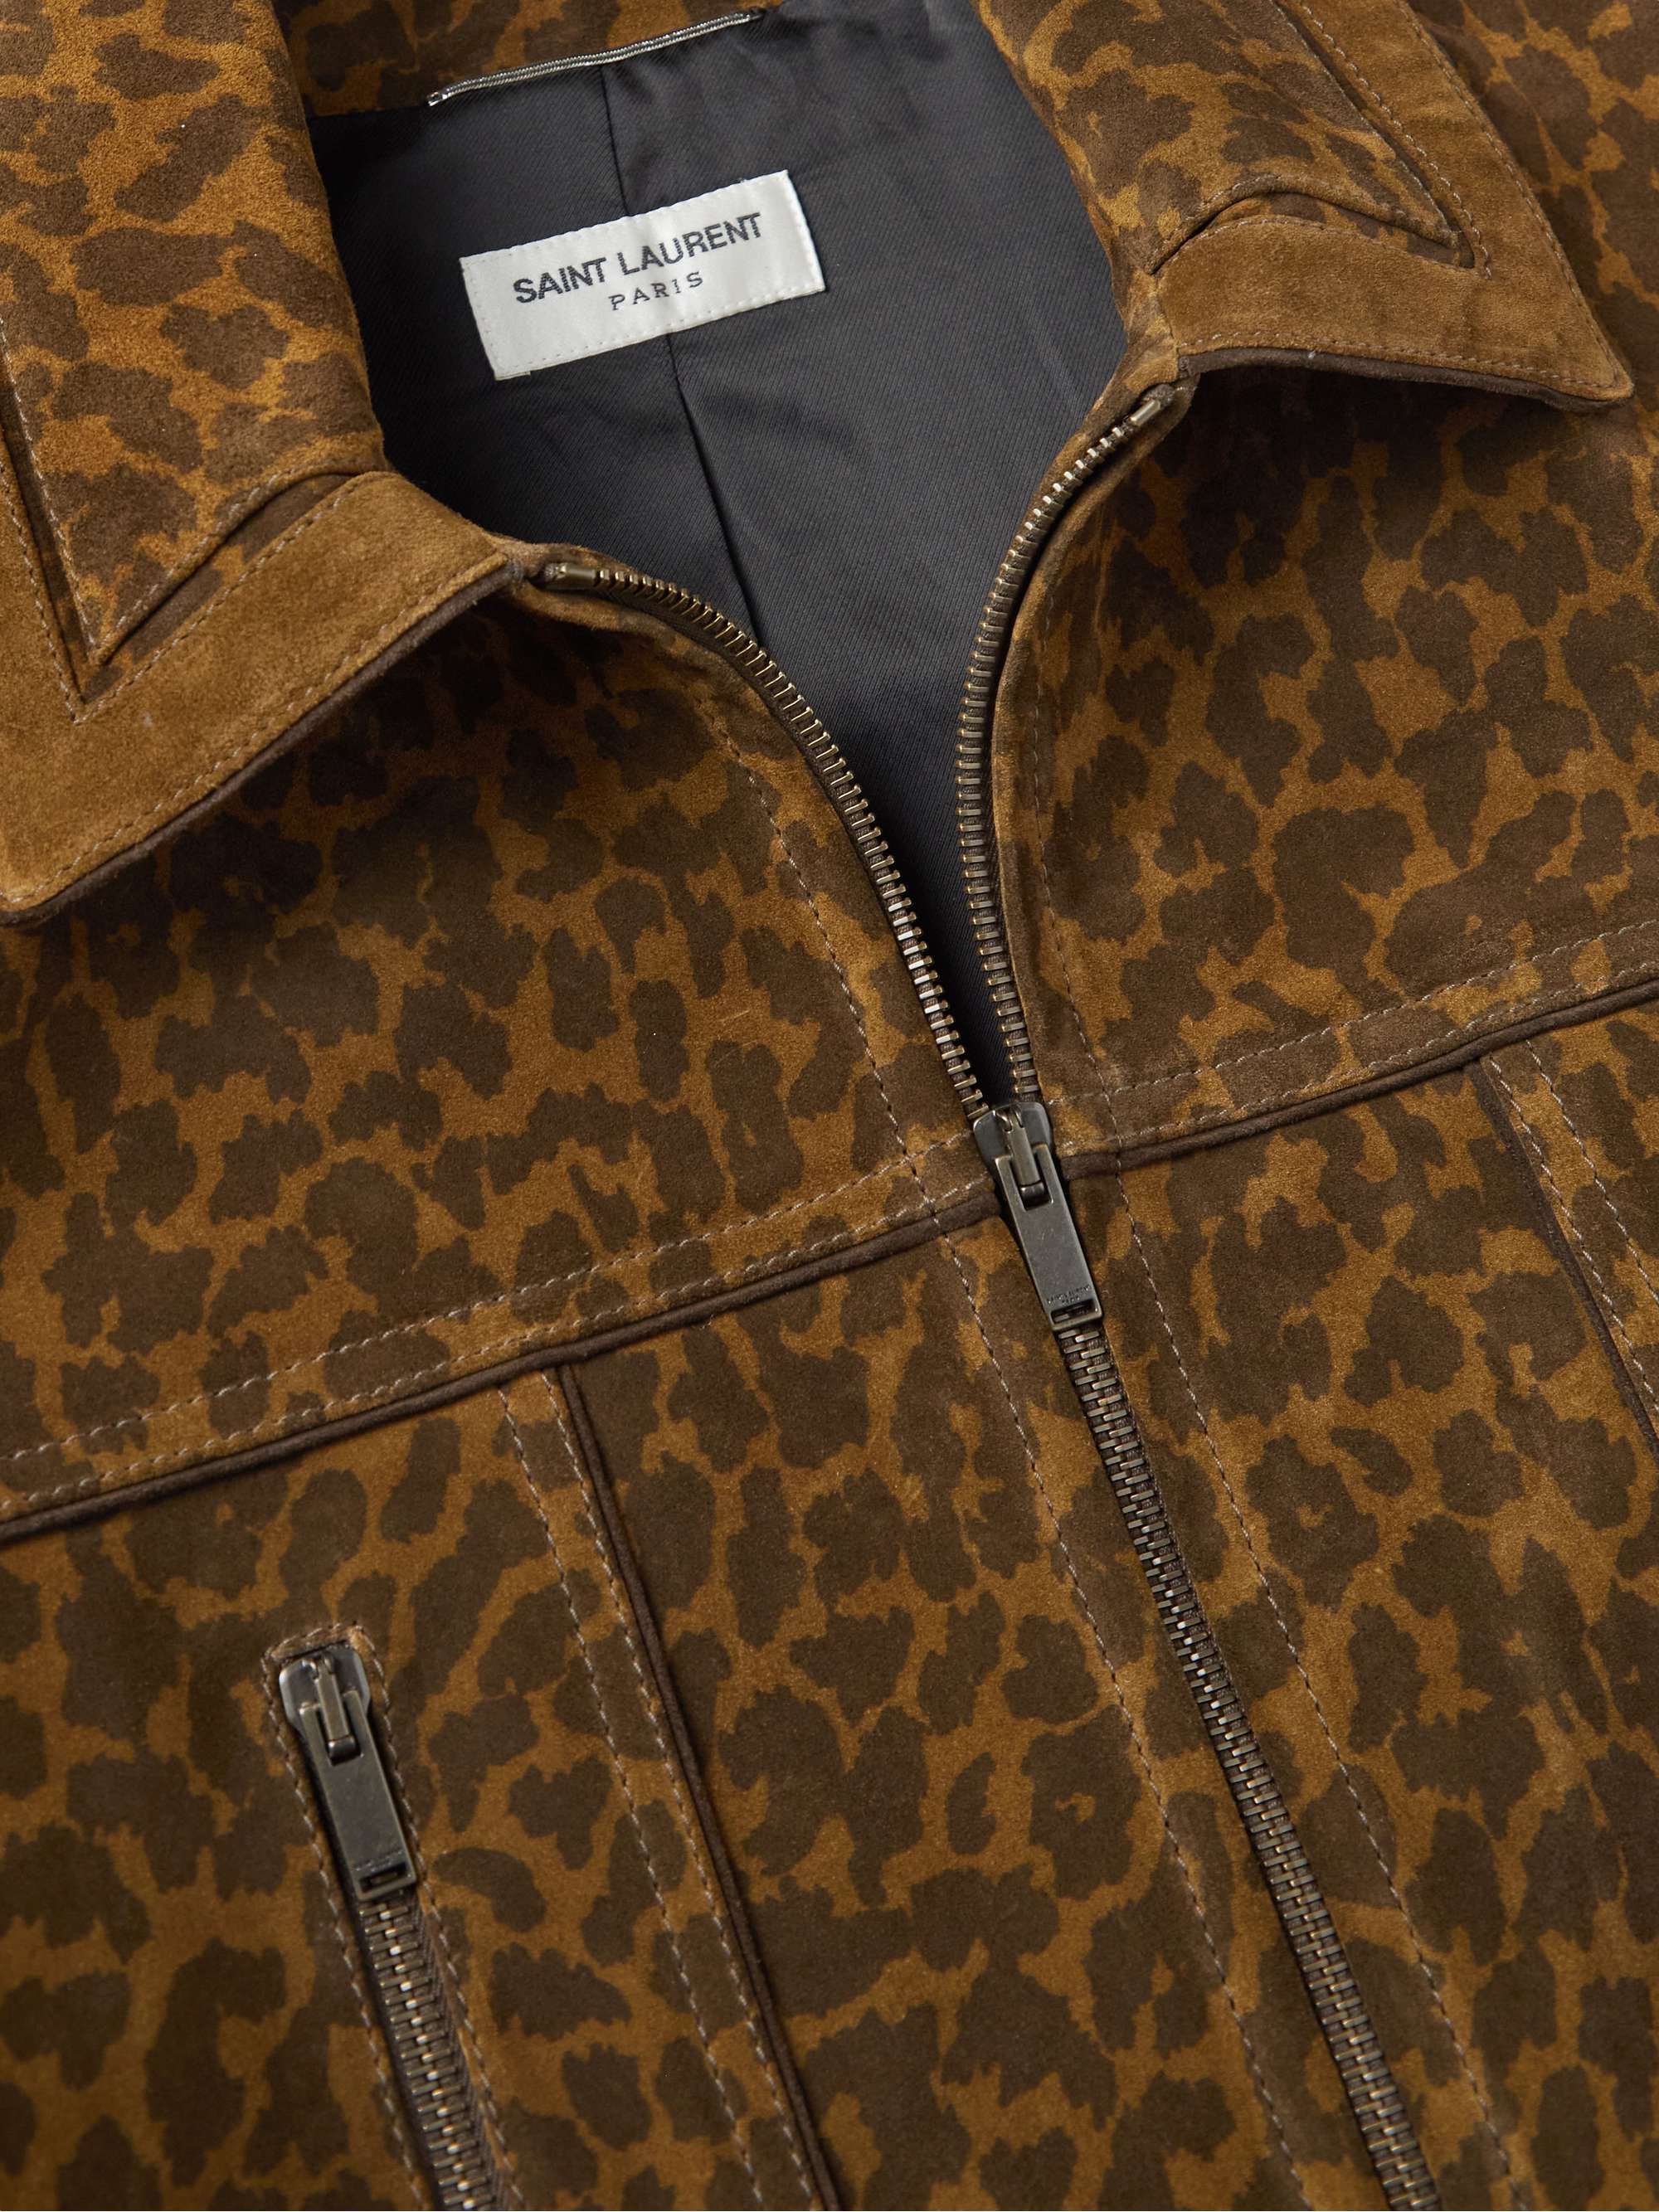 SAINT LAURENT Leopard-Print Suede Jacket